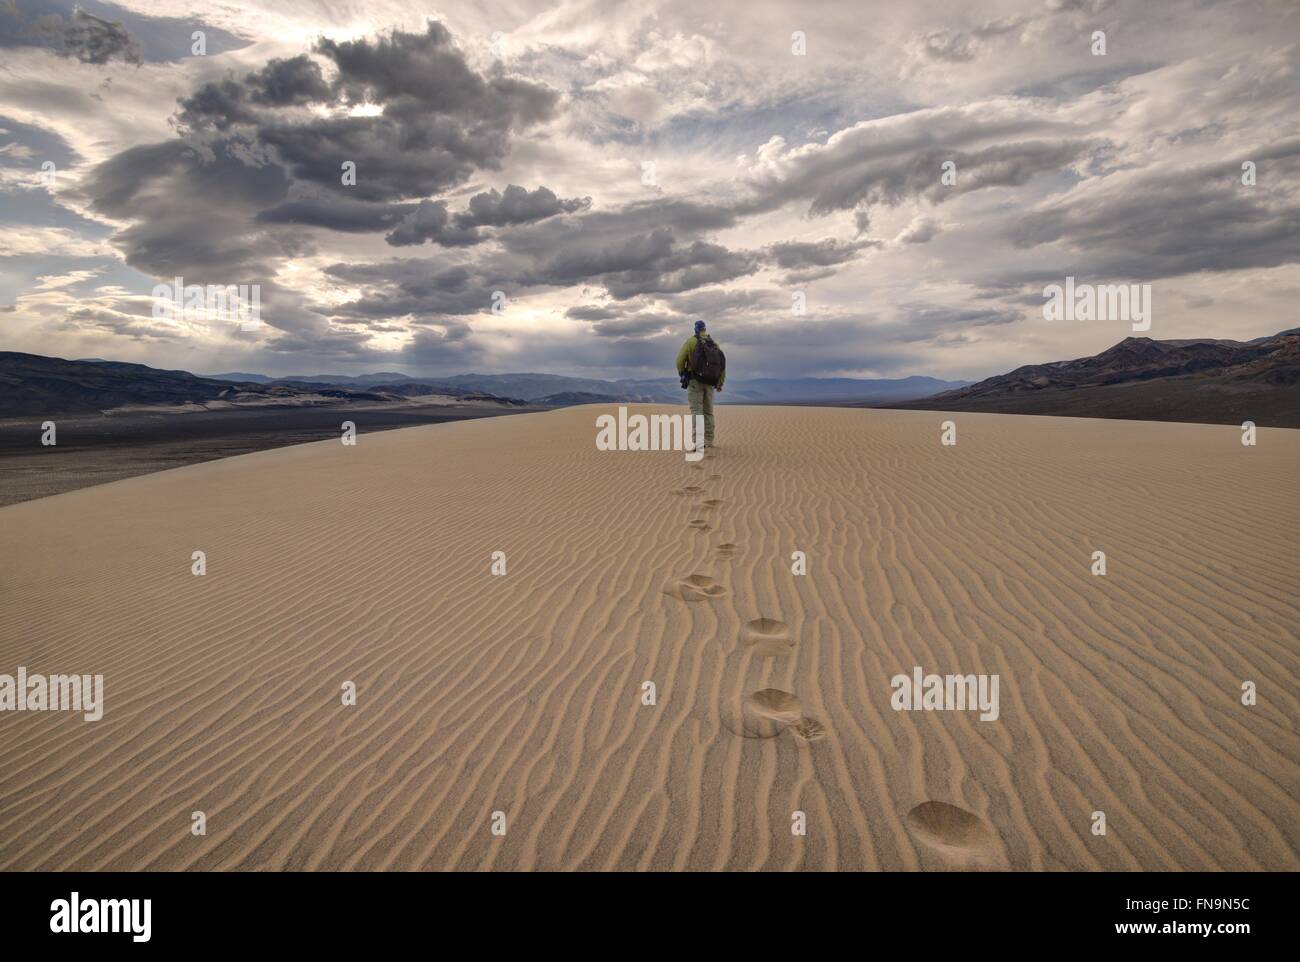 Homme marchant dans les dunes eureka, parc national de la vallée de la mort, Californie, États-Unis Banque D'Images